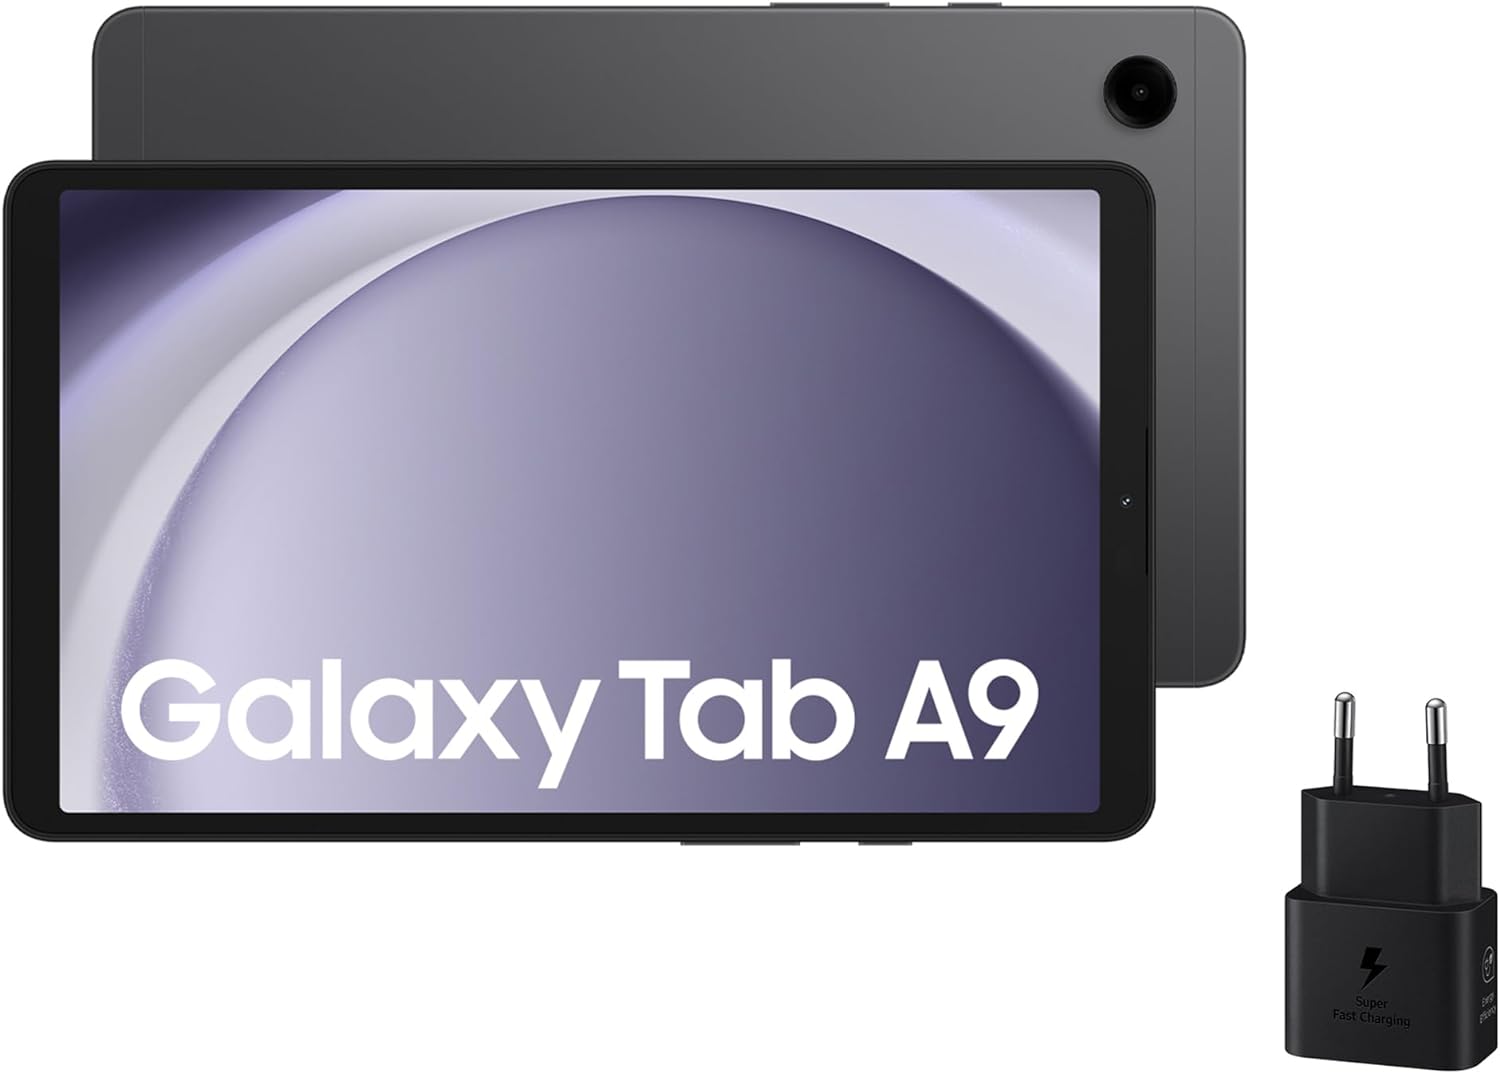 Samsung Galaxy Tab A9 vs. Lenovo Tab M10 Plus